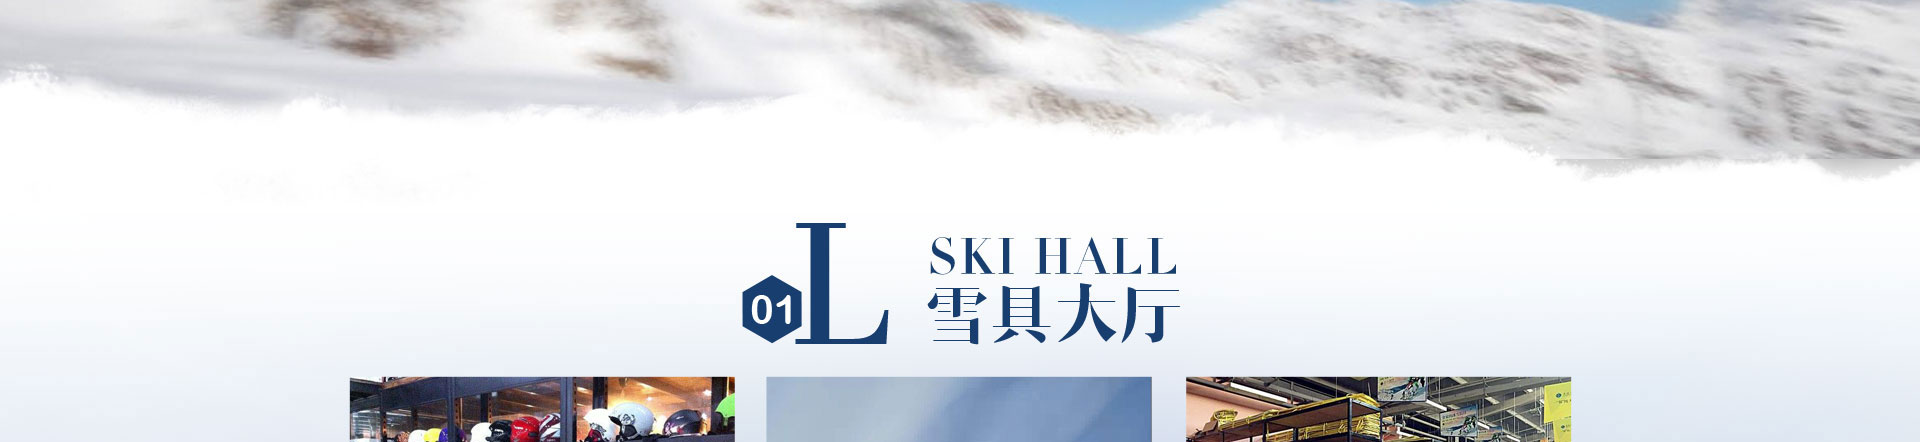 滑雪_05.jpg